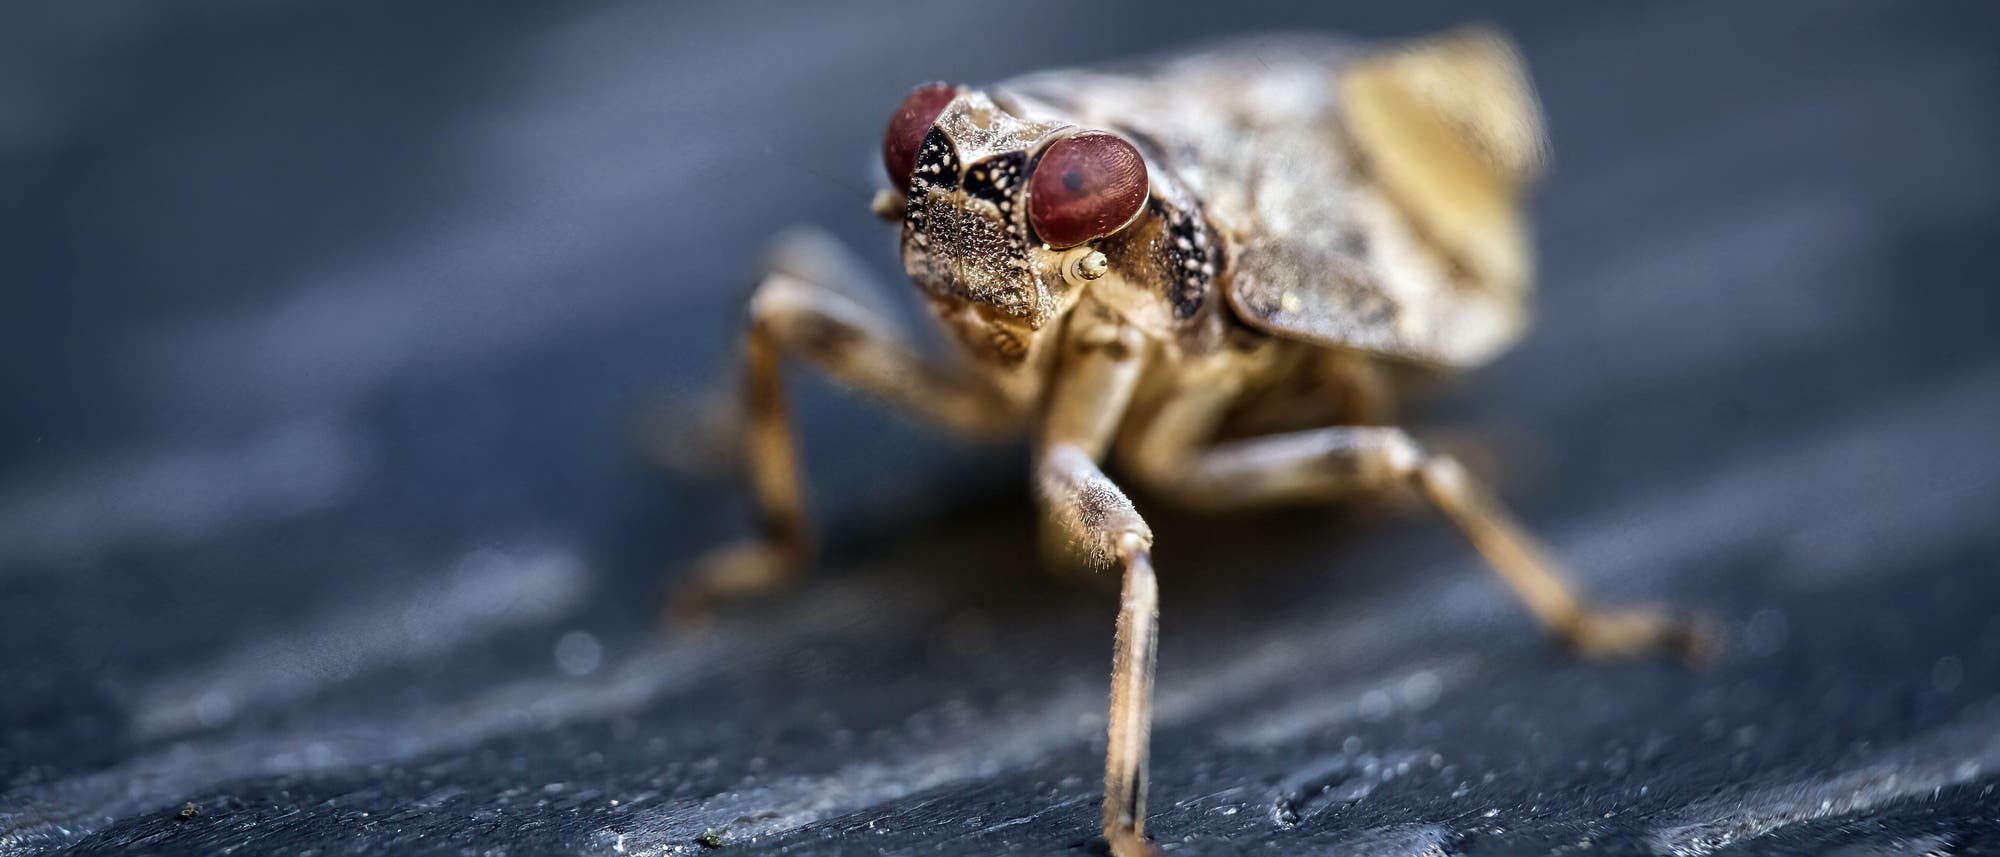 Eine Echte Käferzikade mit großen braunen Augen und einem hellbraun-weißen Körper sitzt auf einem schwarzen Untergrund. Der Kopf des Insekts ist scharf gestellt, der Hinterleib dagegen unscharf. Drei der sechs Beine sind zu sehen 